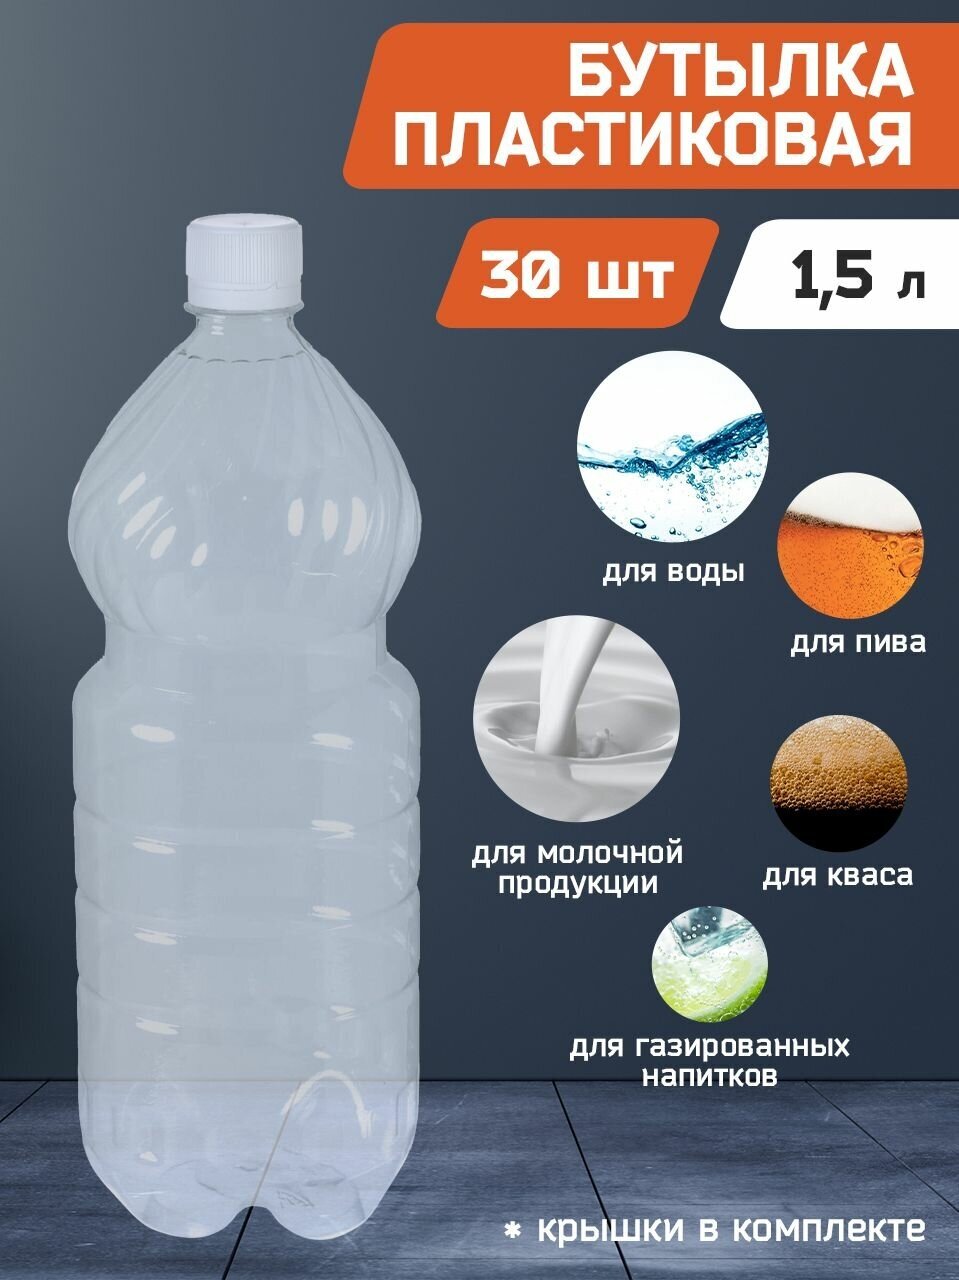 Бутылка пластиковая, прозрачная ПЭТ 1,5 (л) литра с крышкой. Упаковка 30 шт.